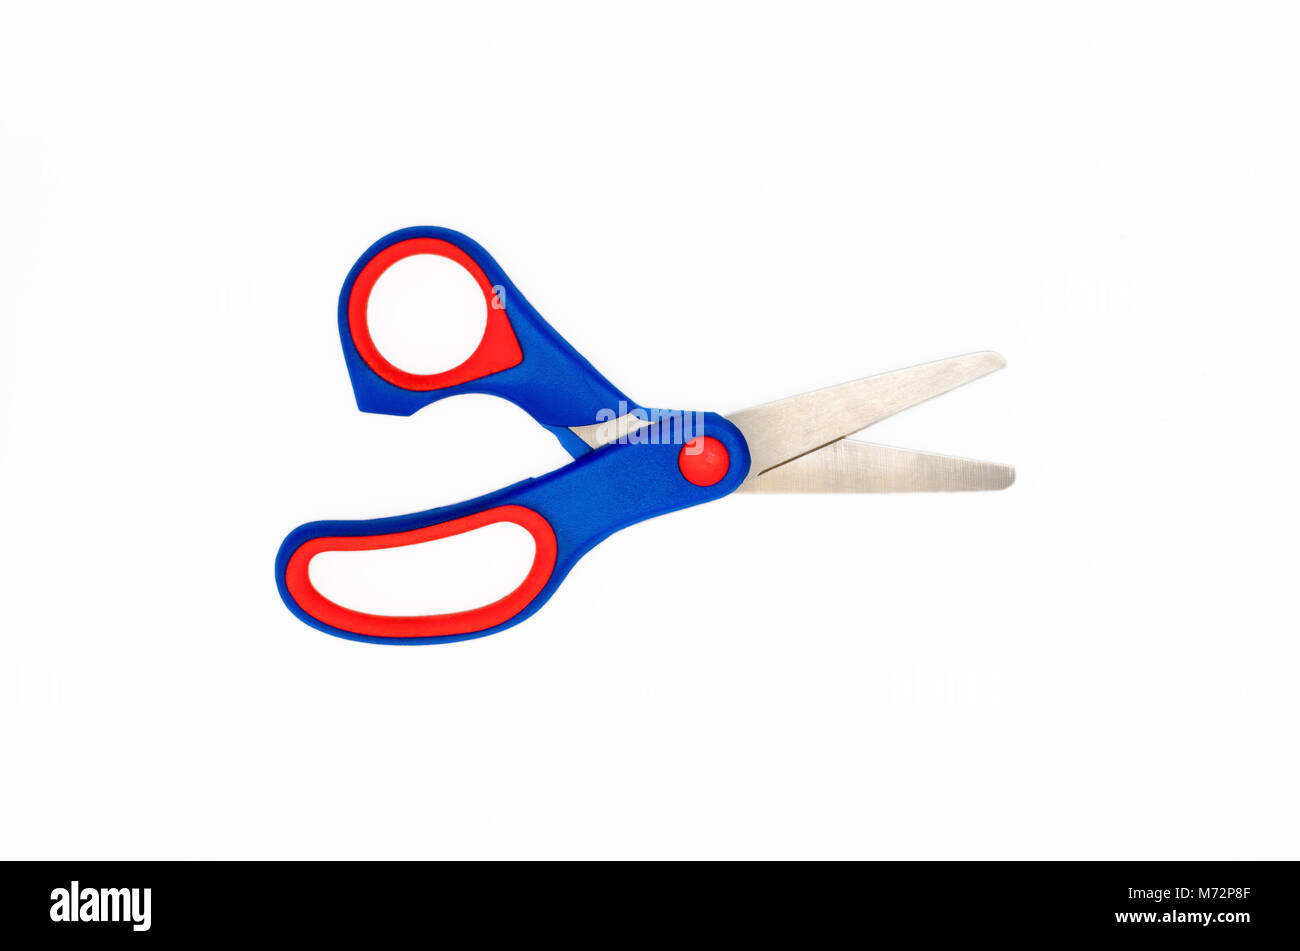 Premium Photo  Home economics objects child scissors isolated